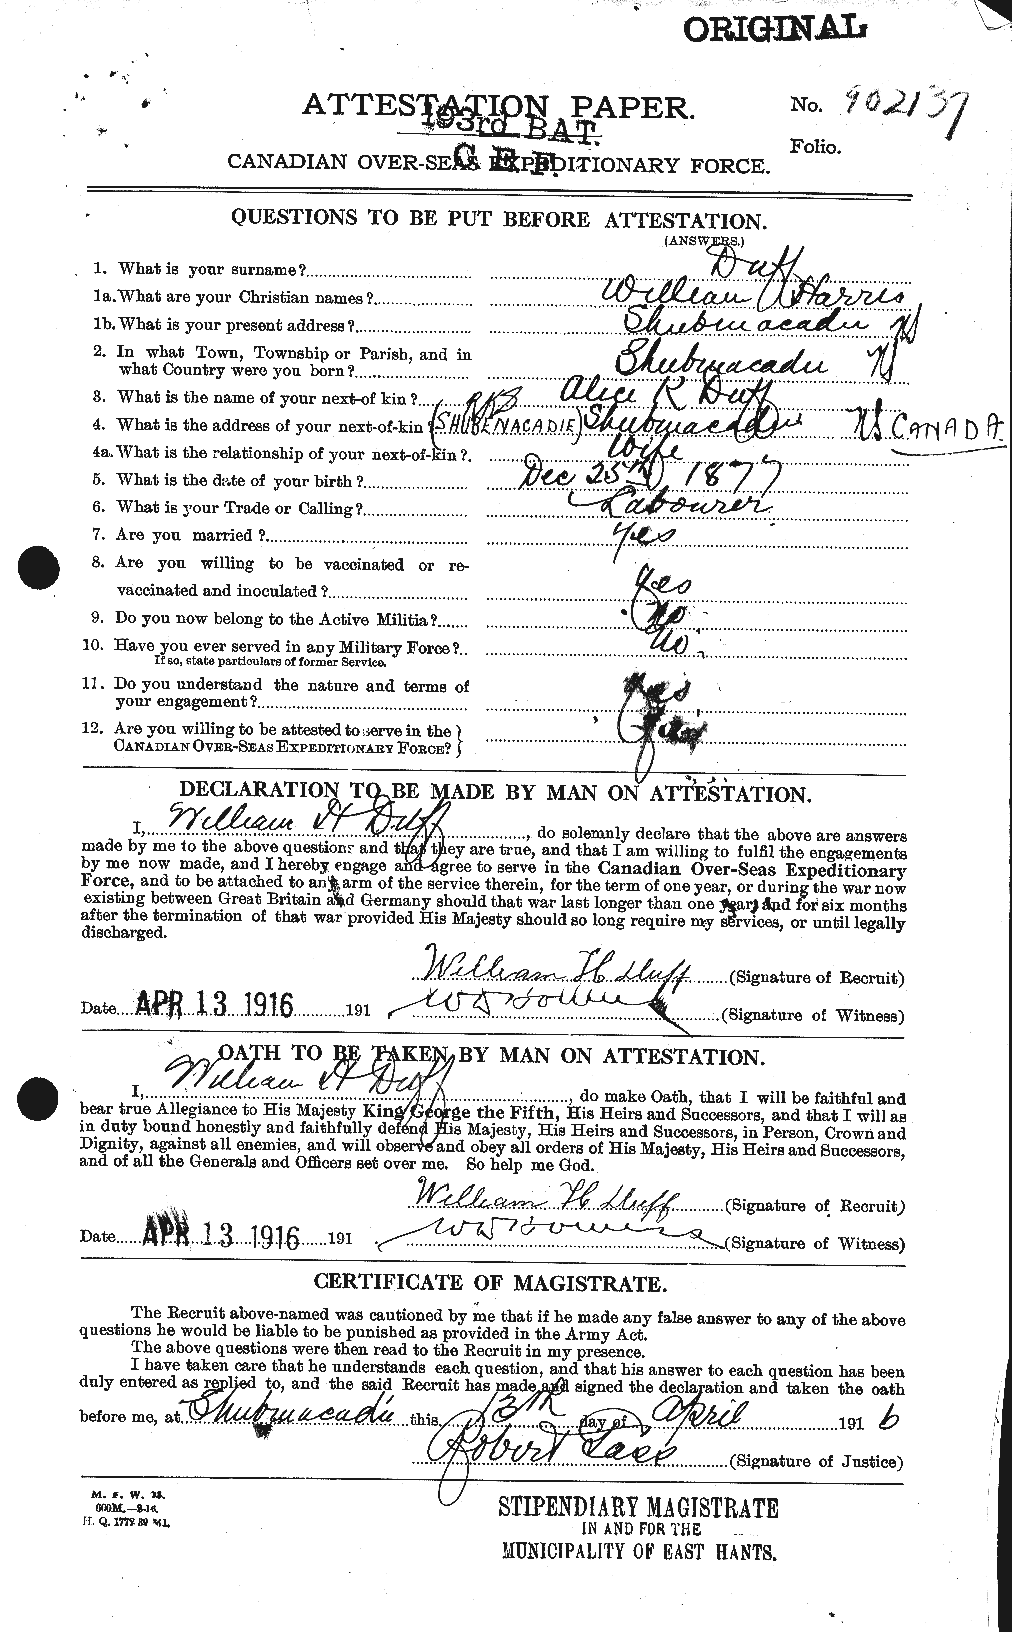 Dossiers du Personnel de la Première Guerre mondiale - CEC 301164a